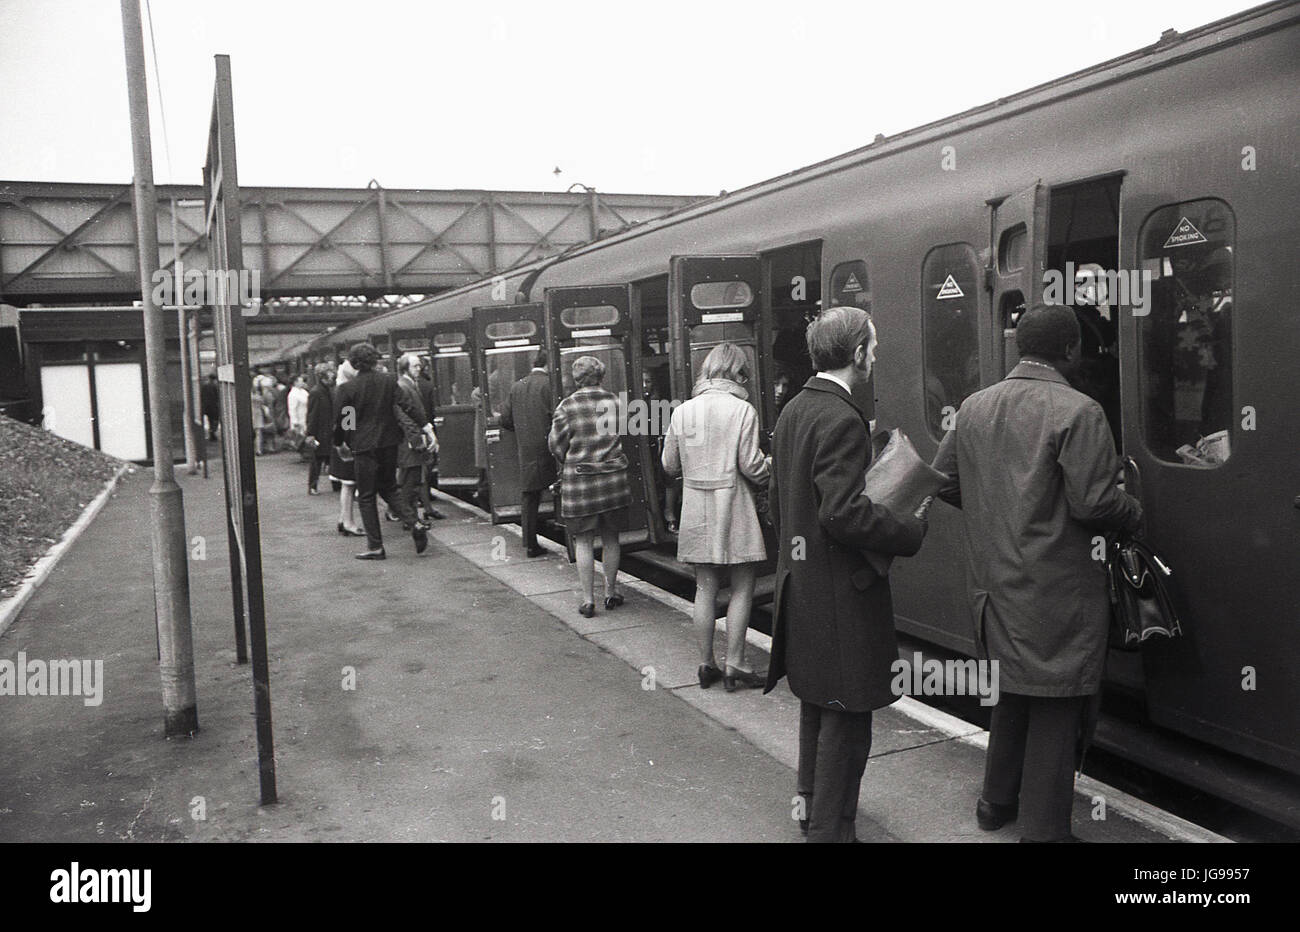 1972, British Rail, a sud-est di Londra, Inghilterra, Regno Unito, Brockley stazione ferroviaria, casa di servizi ferroviari dalla regione meridionale. La figura mostra un pendolari boardin carrozze ferroviarie. Foto Stock